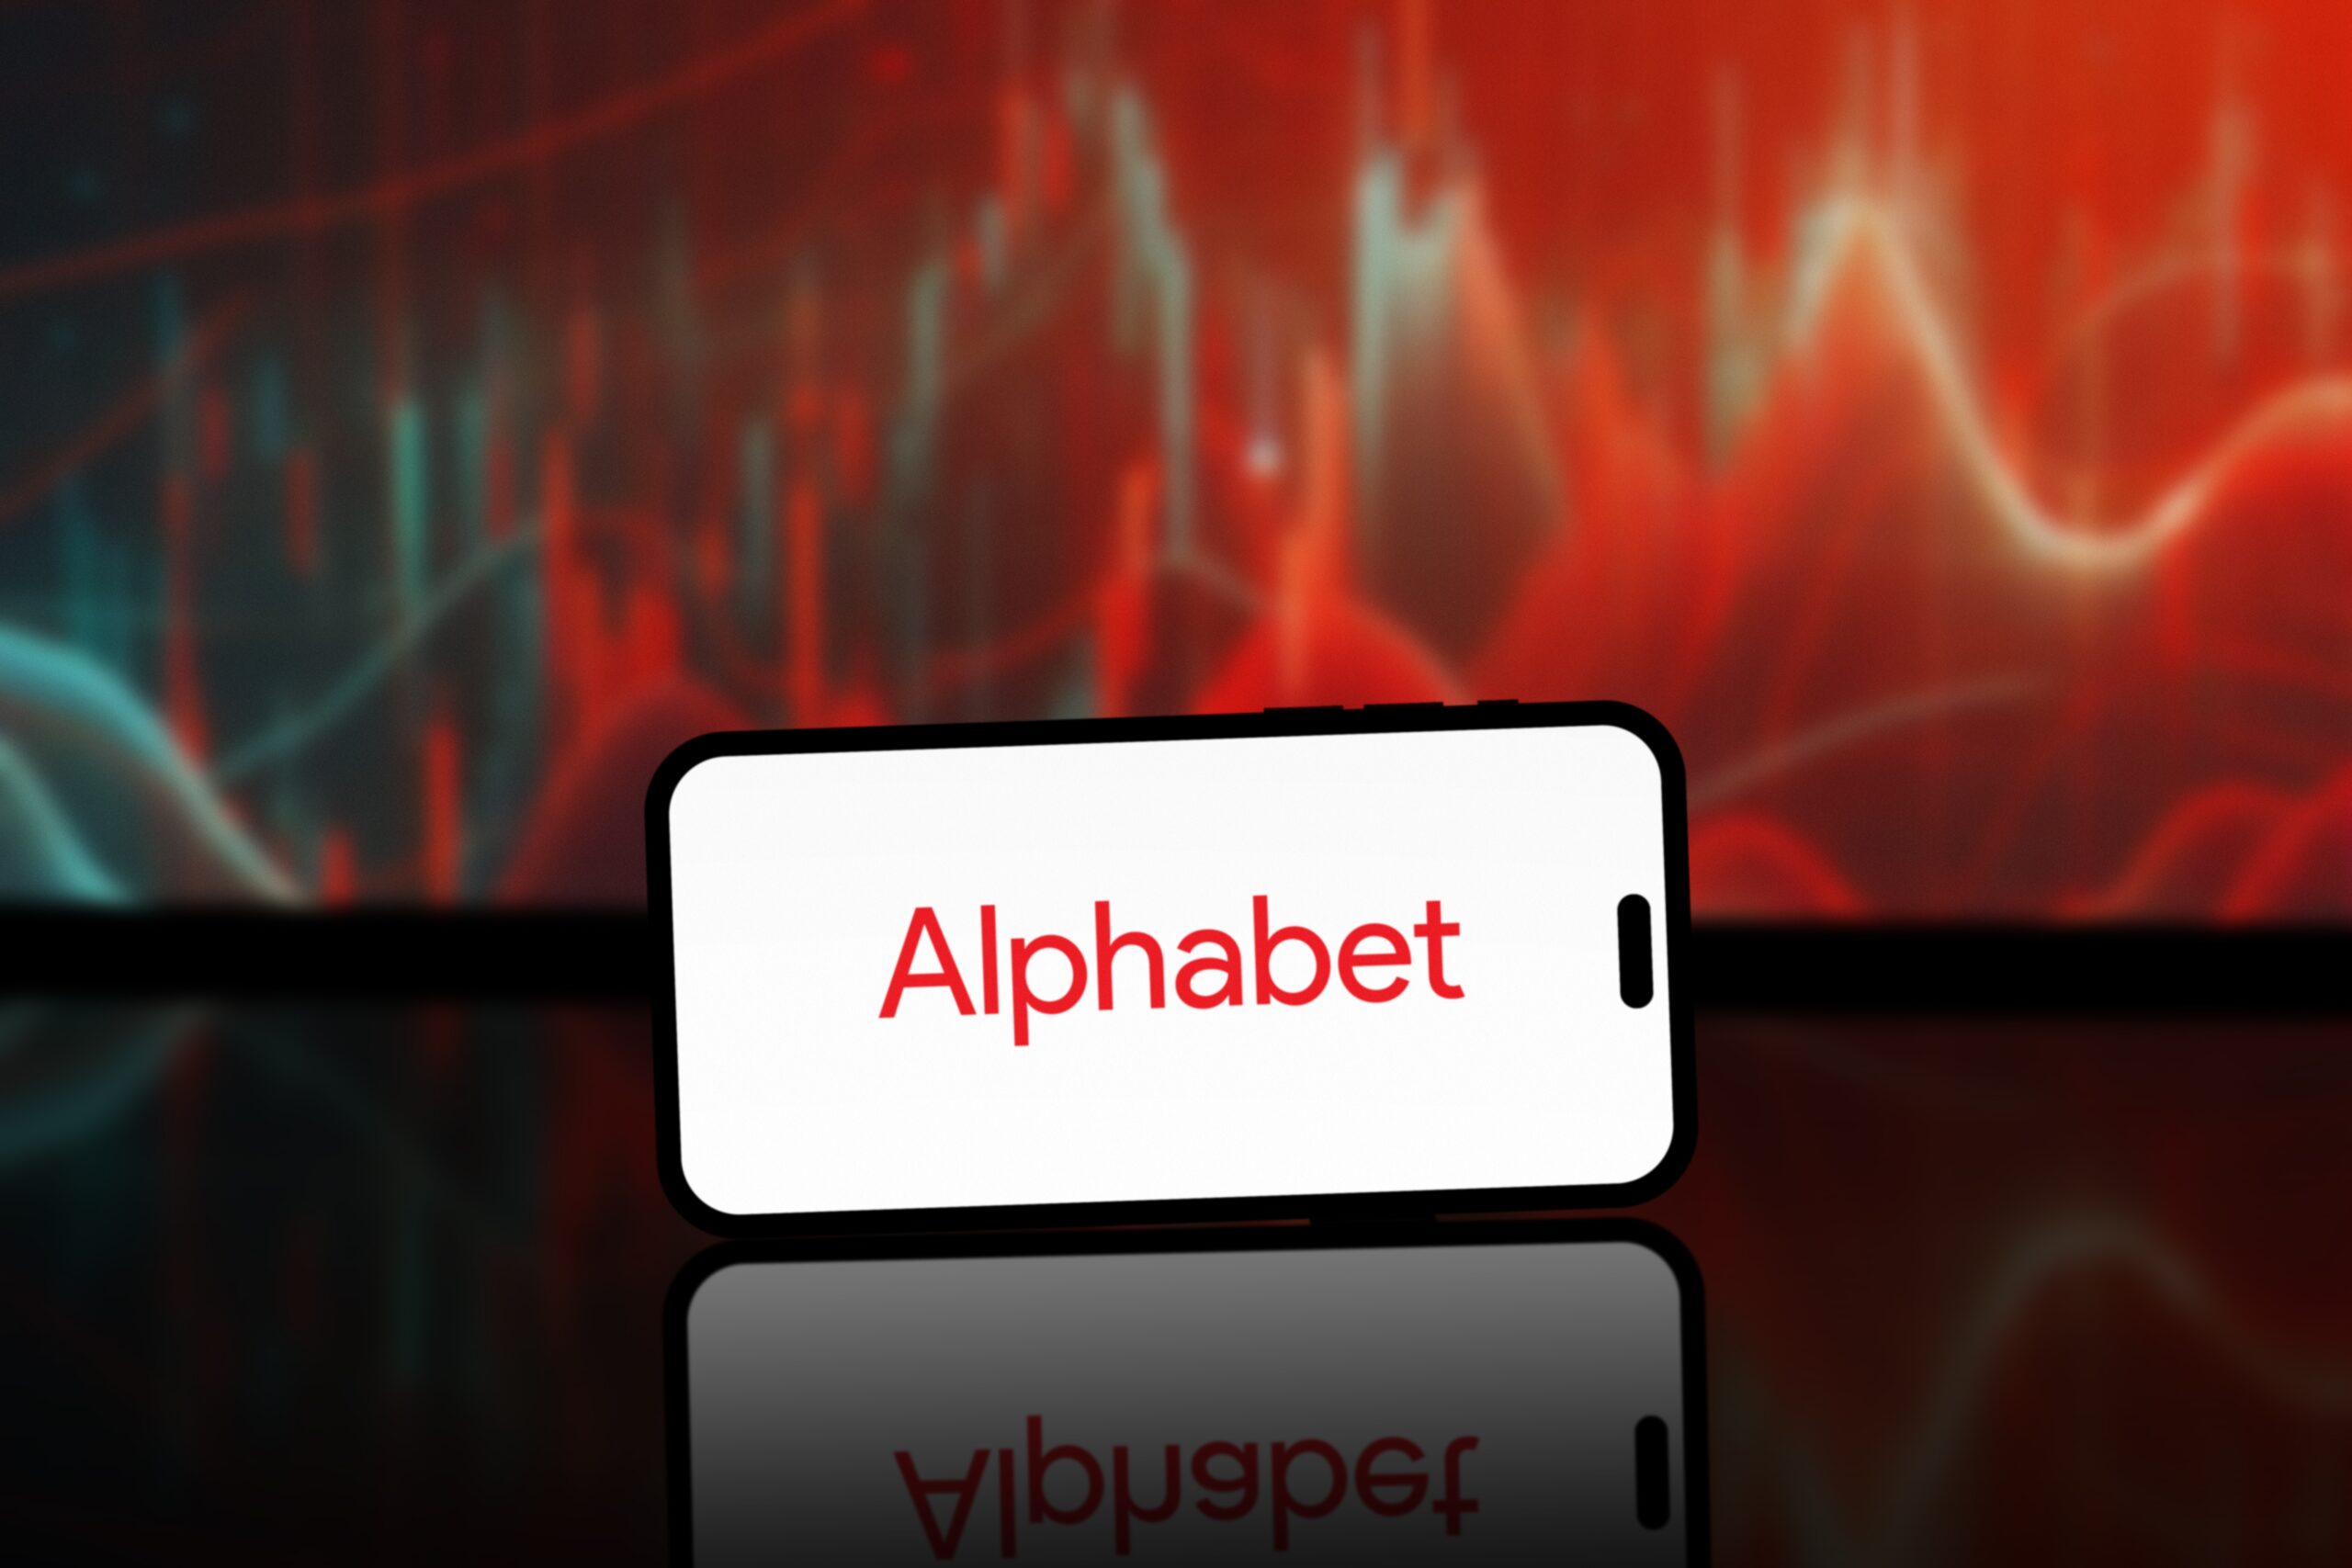 Smartfon z napisem "Alphabet" na ekranie, na tle czerwono-czarnych abstrakcyjnych wzorów.